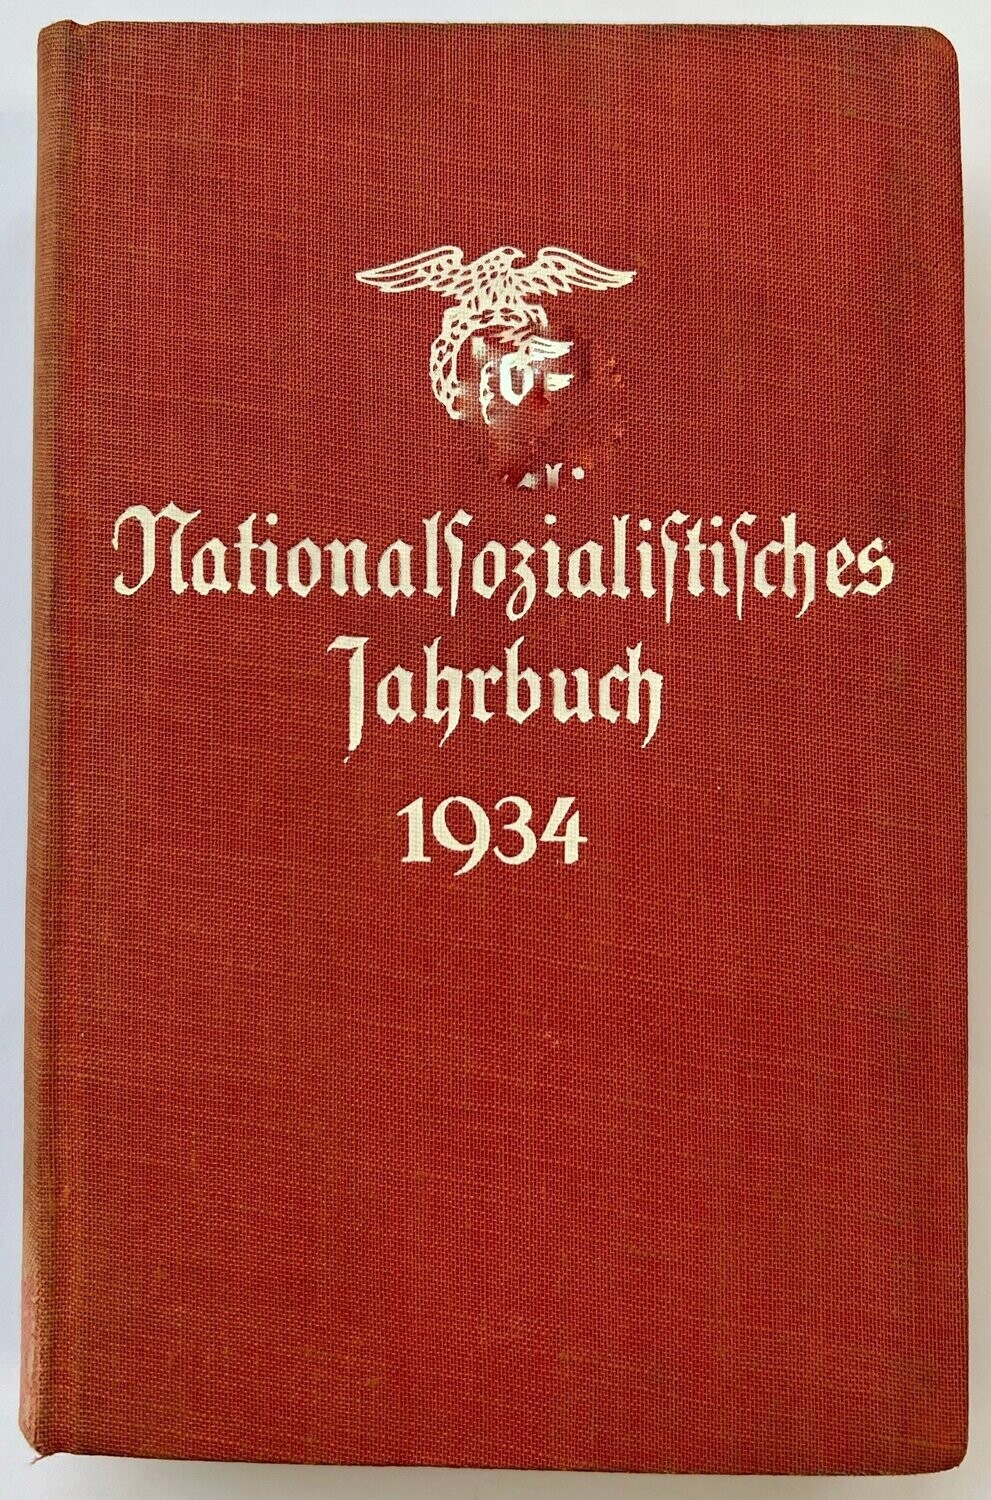 Nationalsozialistisches Jahrbuch 1934 - Ganzleinenausgabe aus dem Jahr 1933